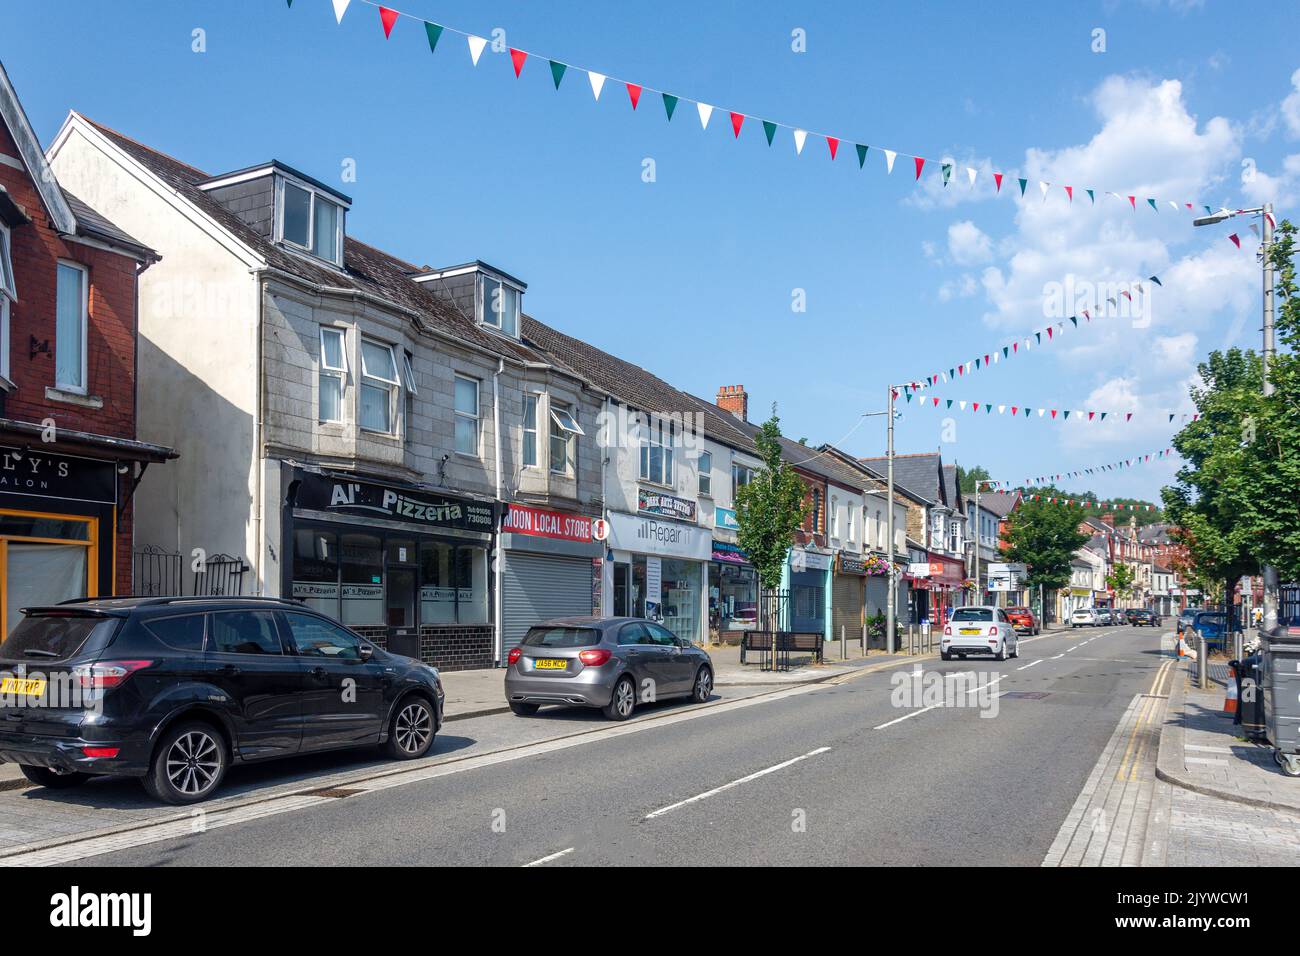 Commercial Street, Maesteg, Bridgend County Borough (Pen-y-bont), Wales (Cymru), United Kingdom Stock Photo